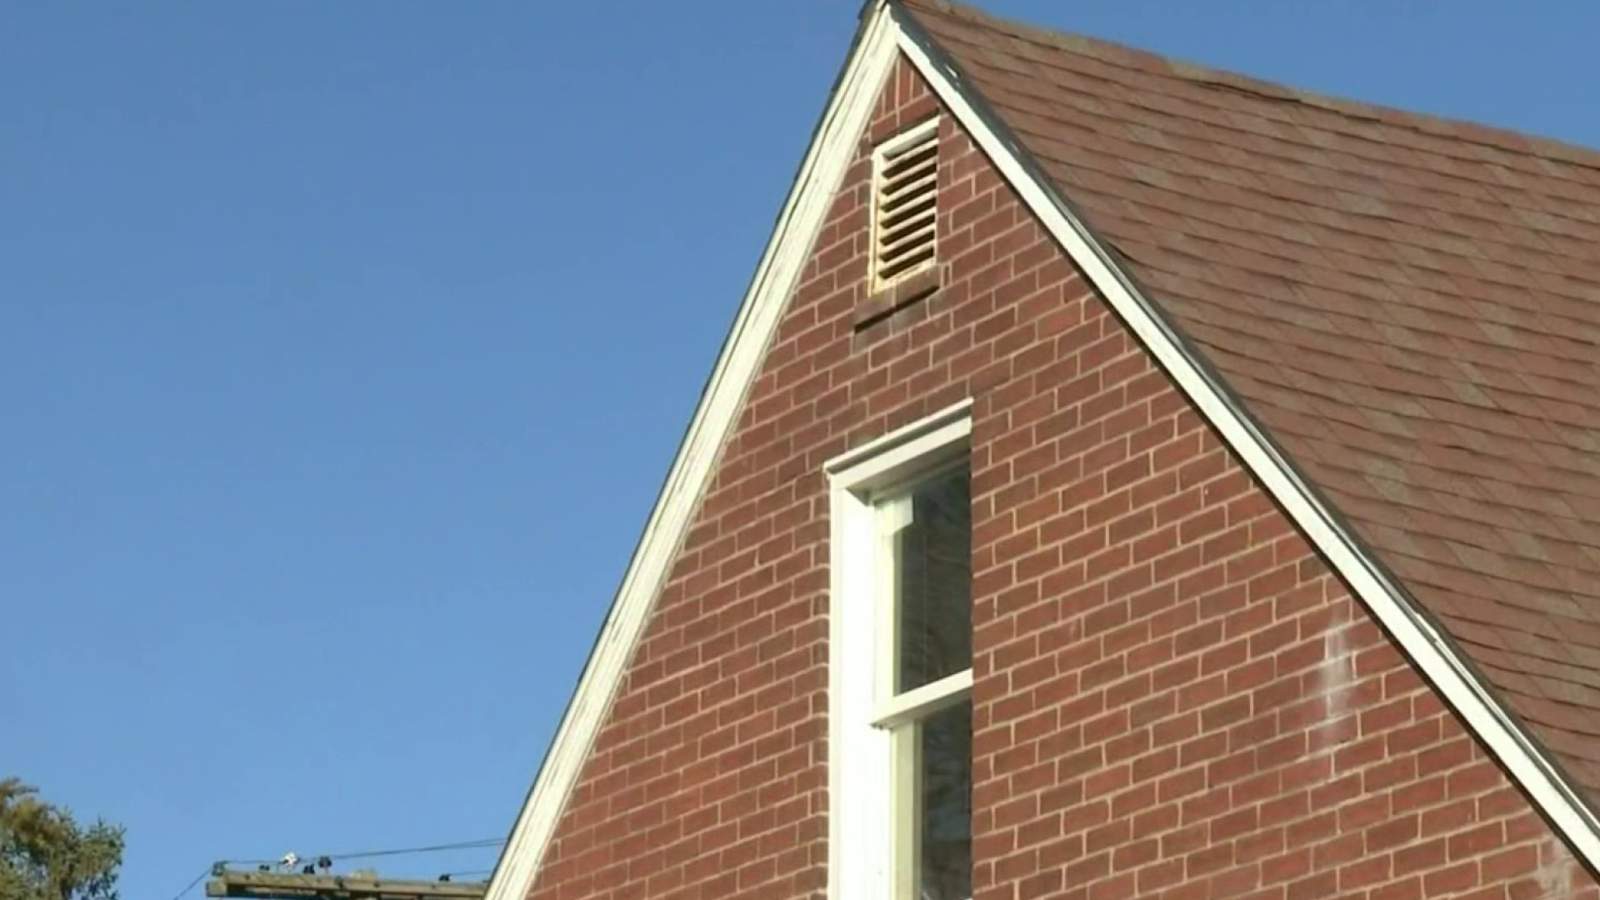 Detroit homeowner shoots teen intruder hiding in attic